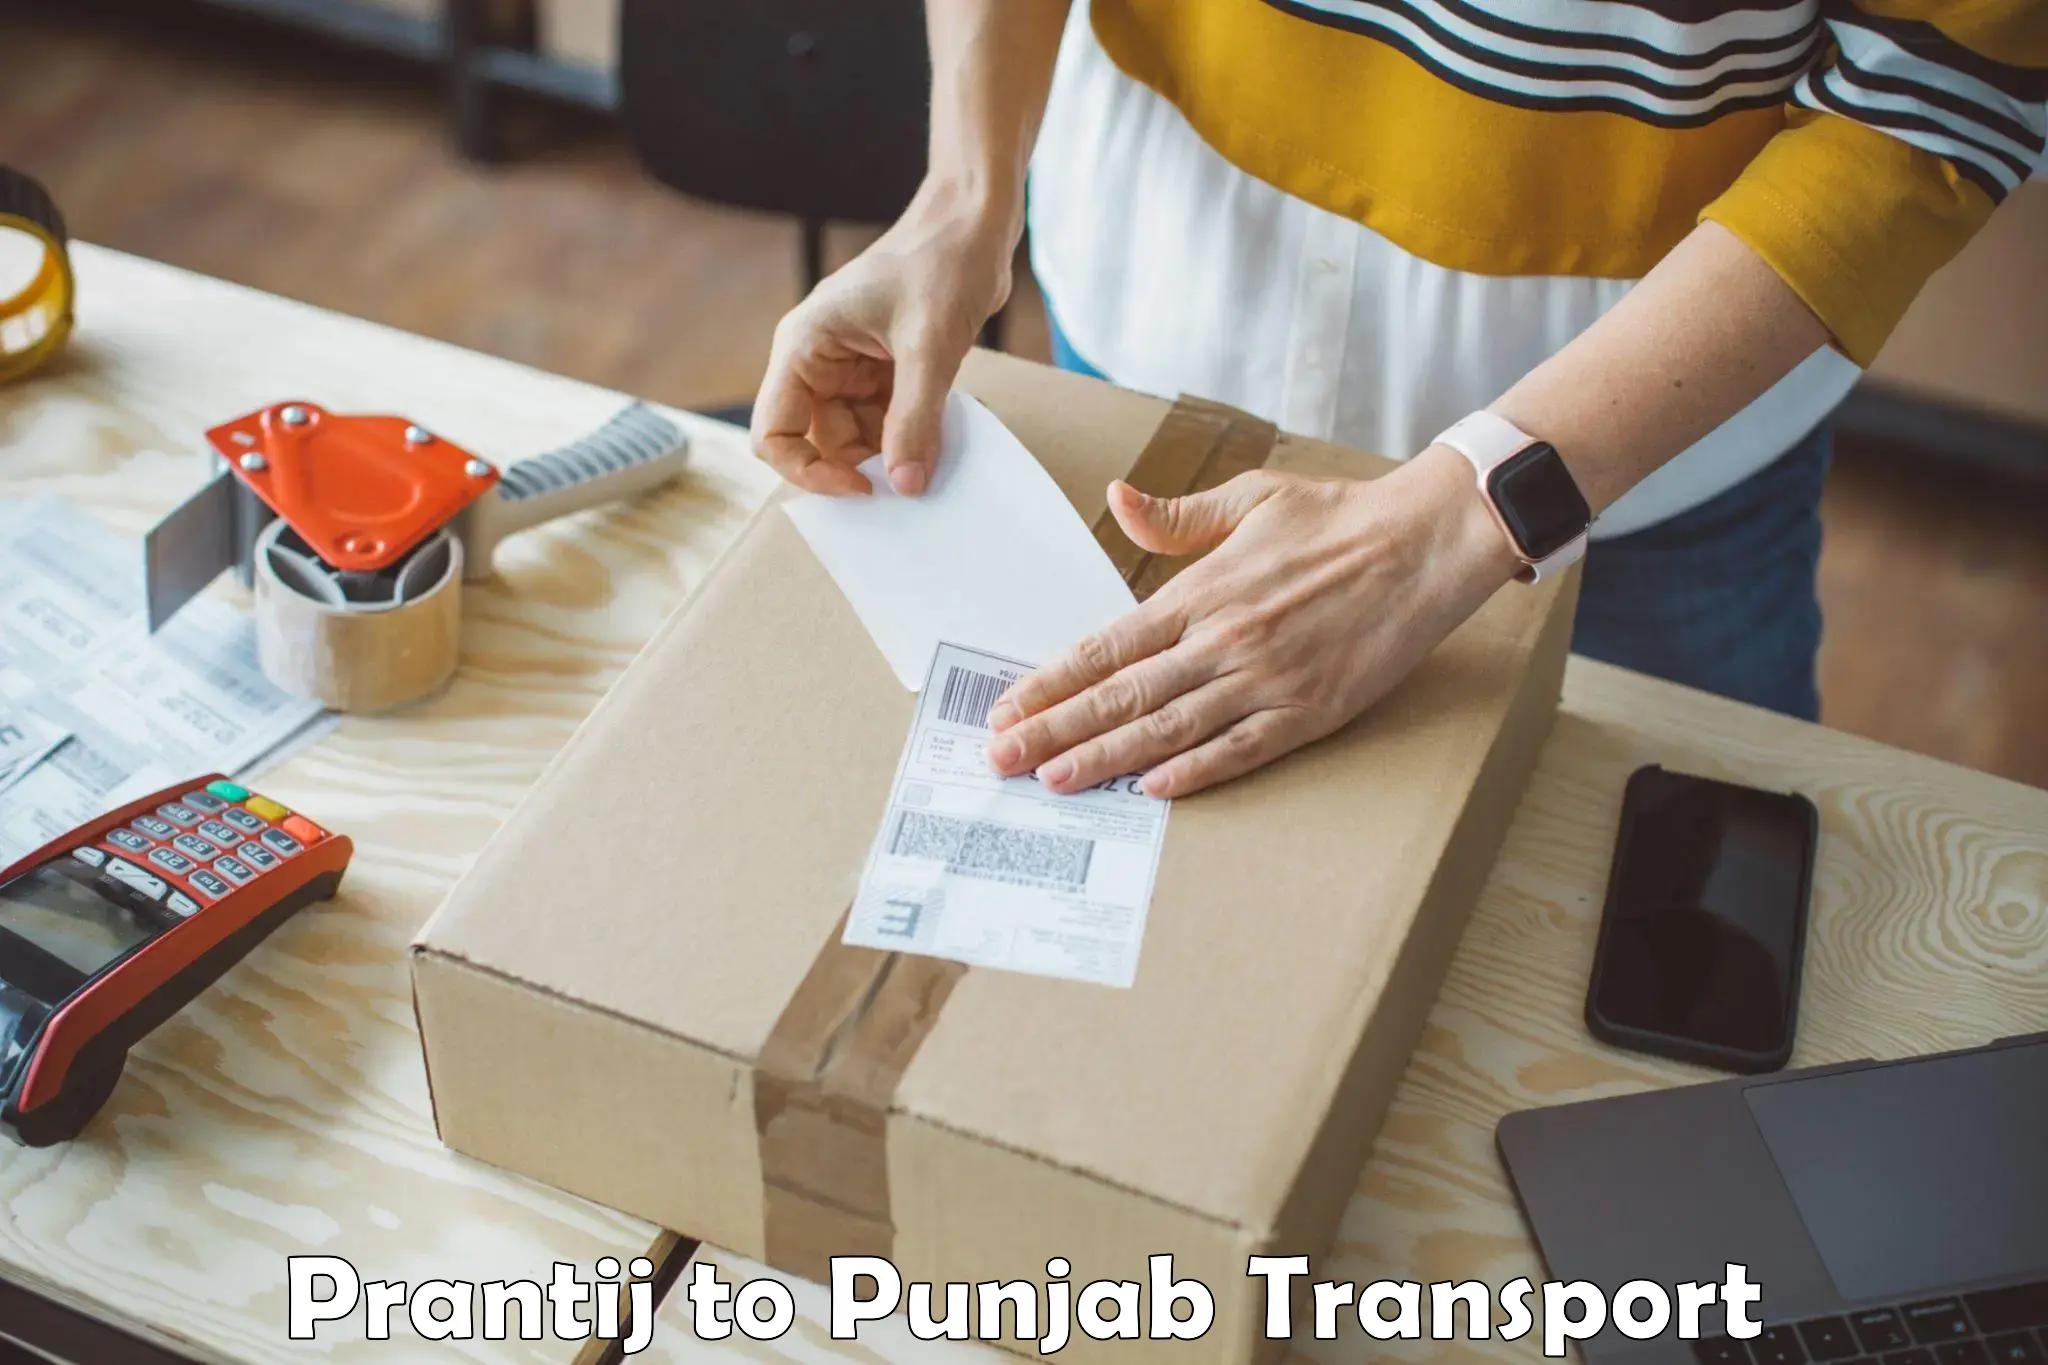 Transport in sharing Prantij to Punjab